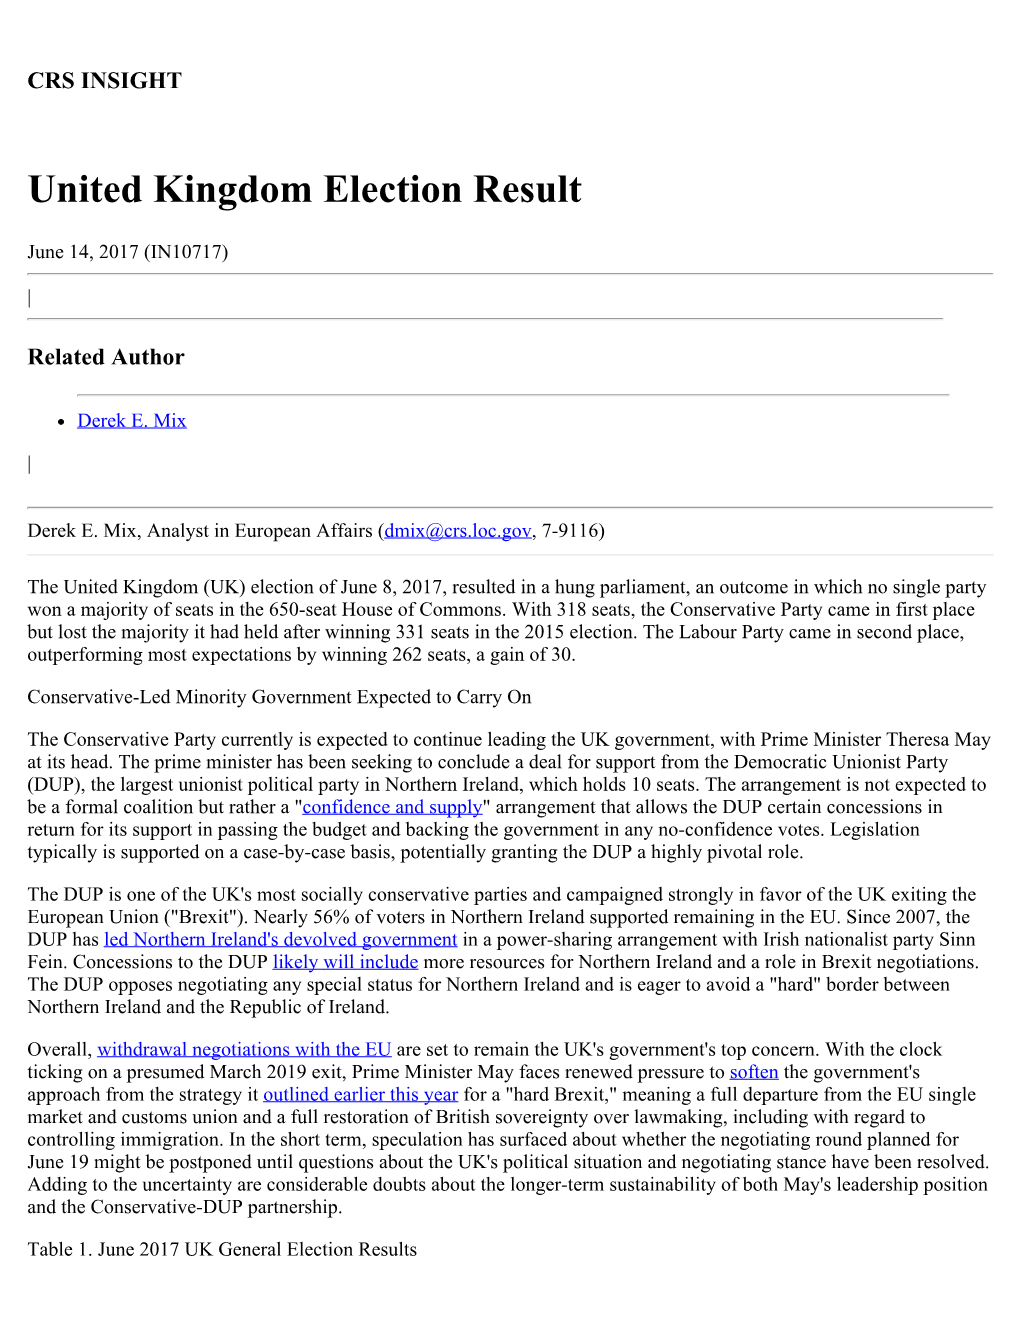 United Kingdom Election Result